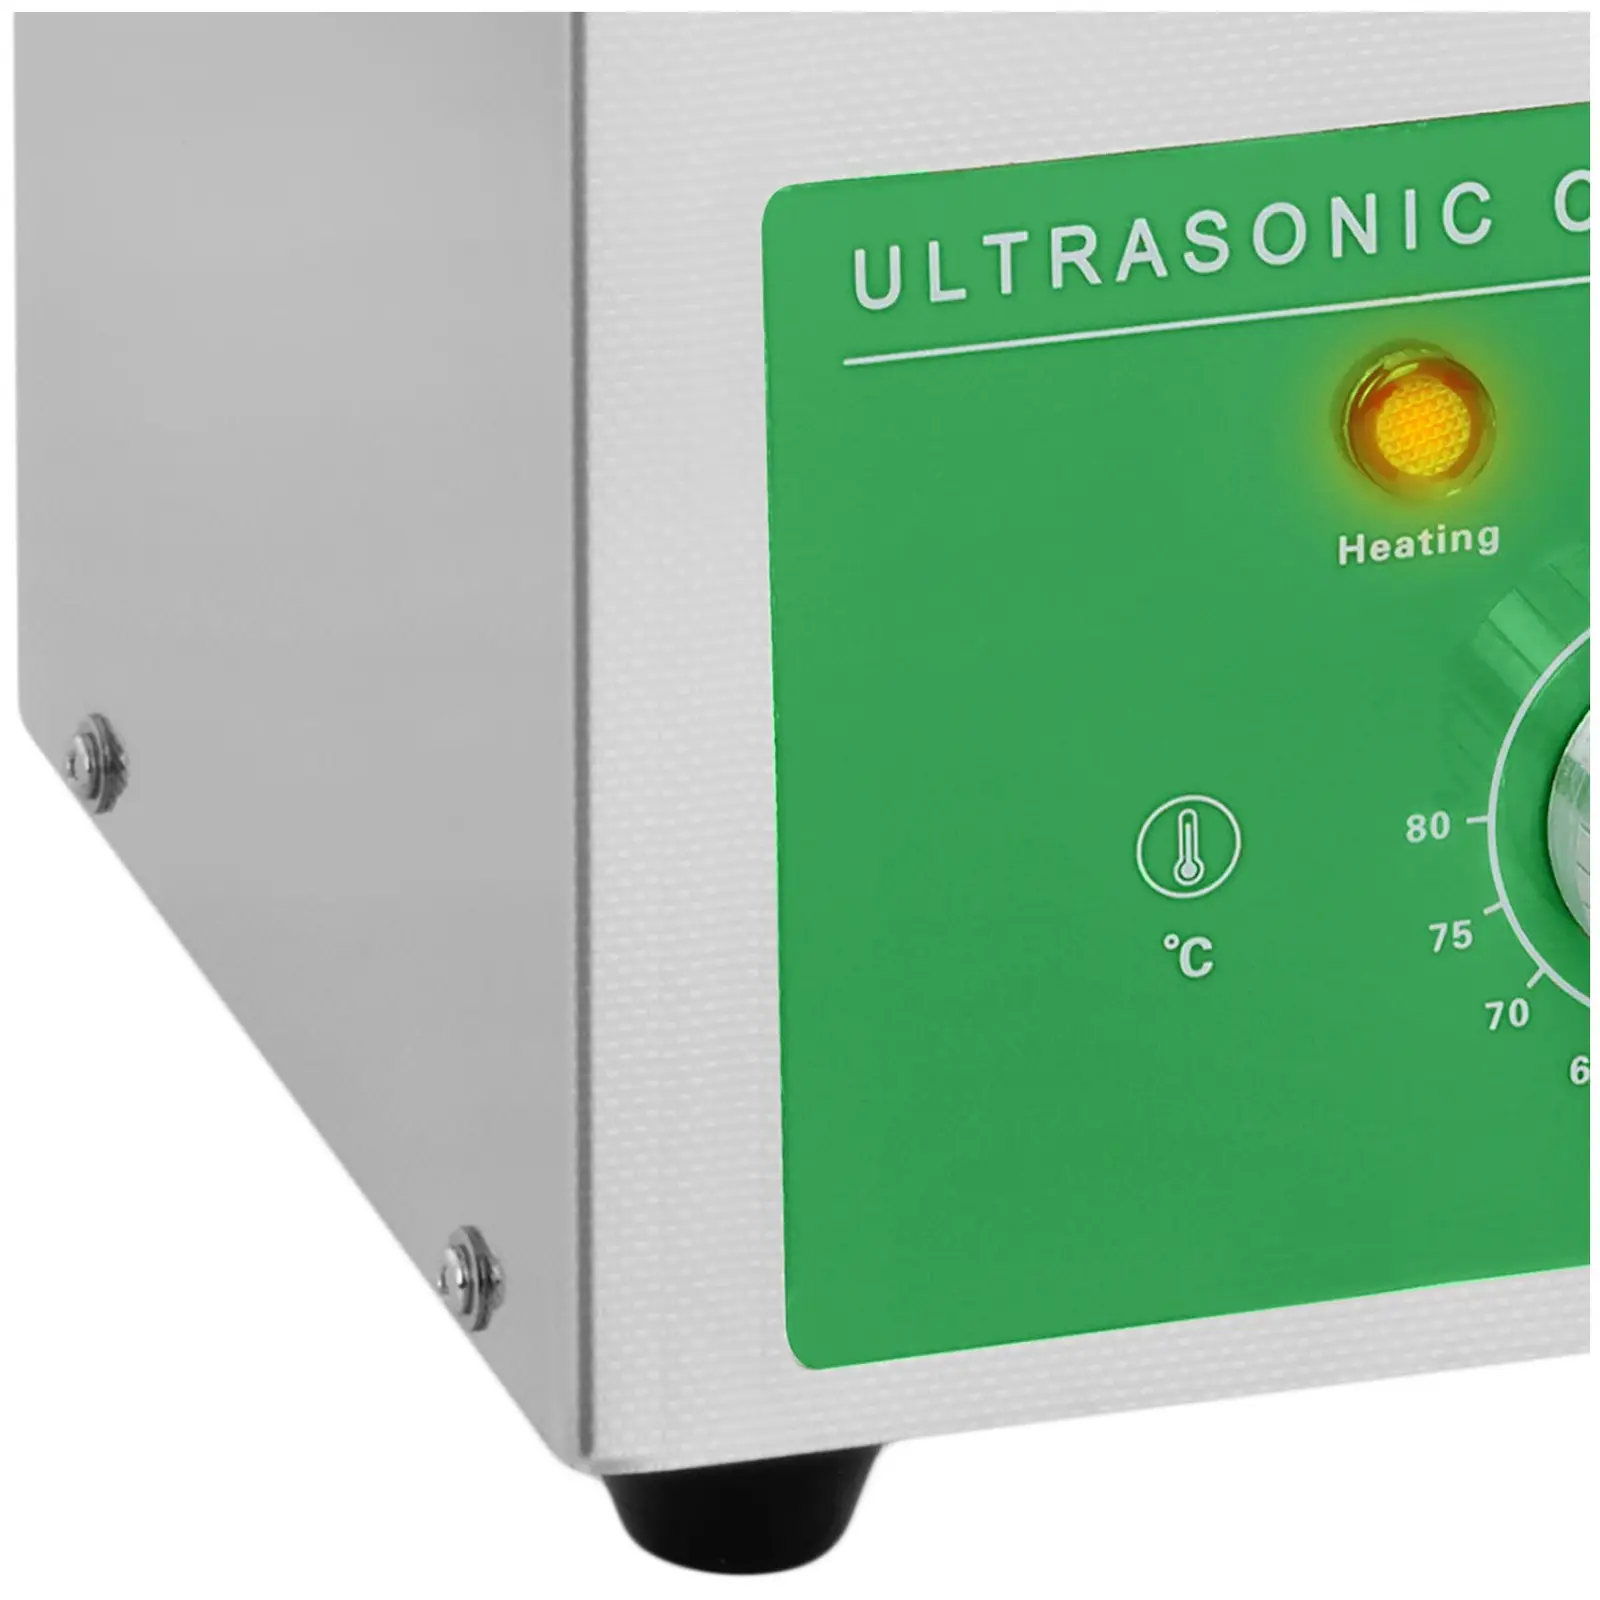 Ultrahangos tisztító - 3 liter - 80 W - Basic Eco